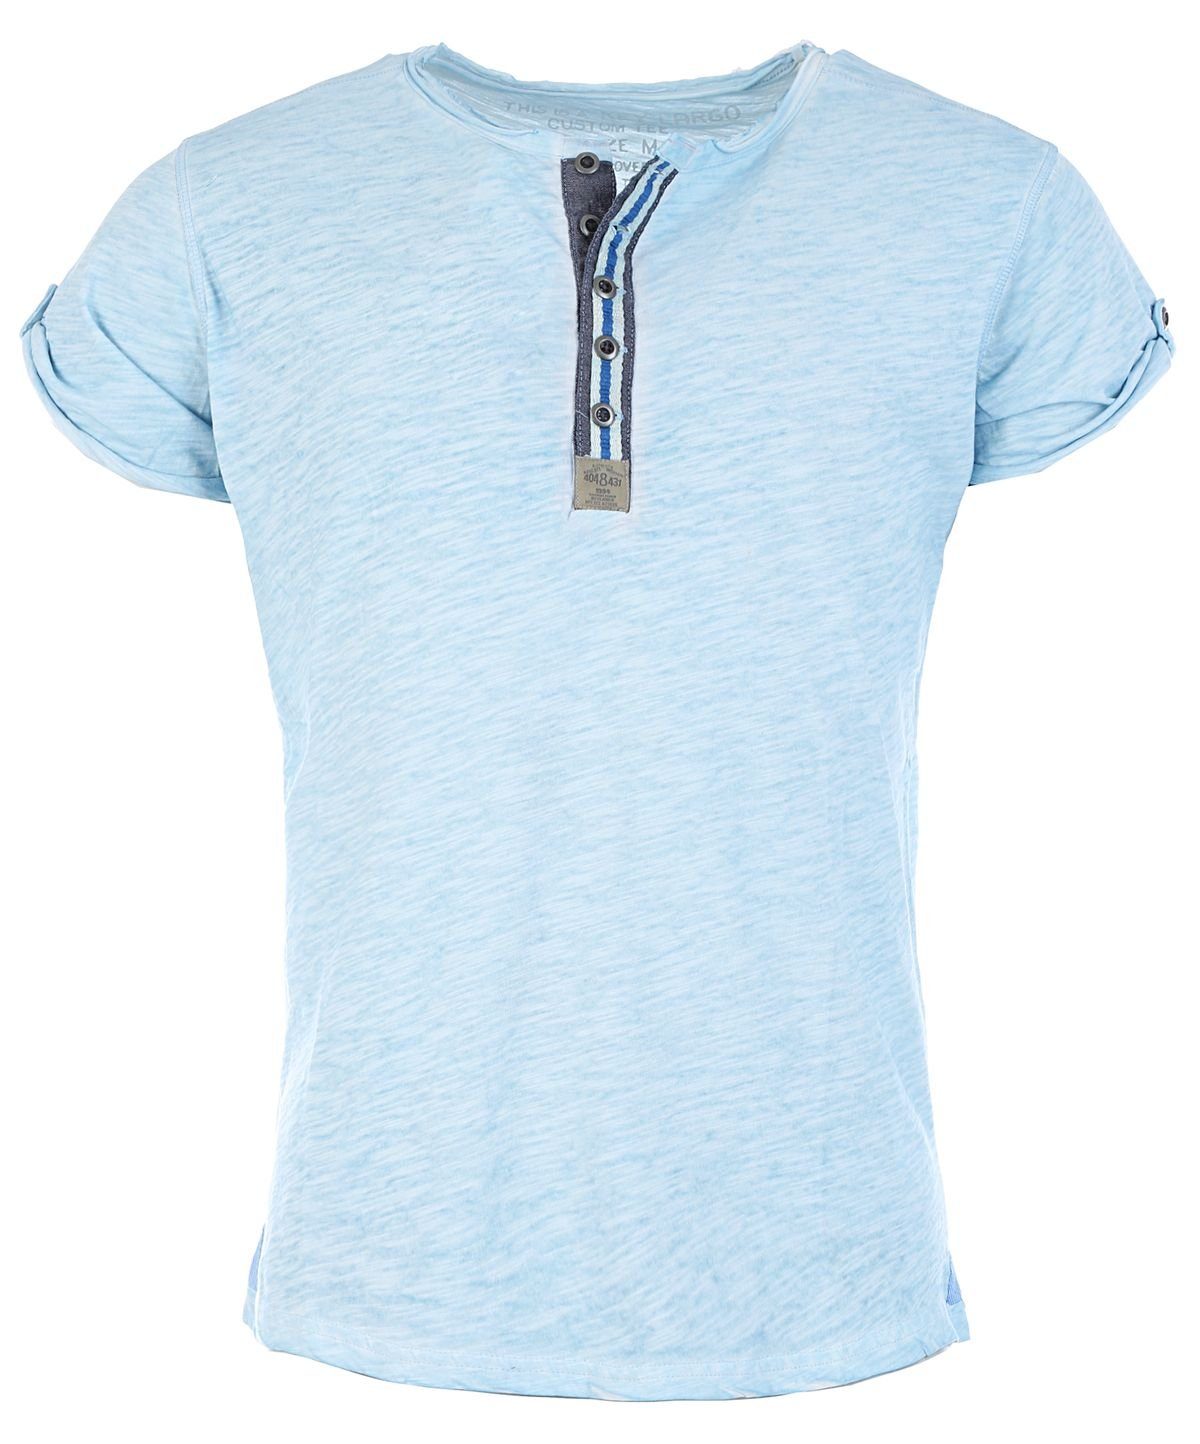 Key Largo T-Shirt für Herren Arena button vintage Look MT00023 mit Knopfleiste unifarben kurzarm slim fit Hellblau